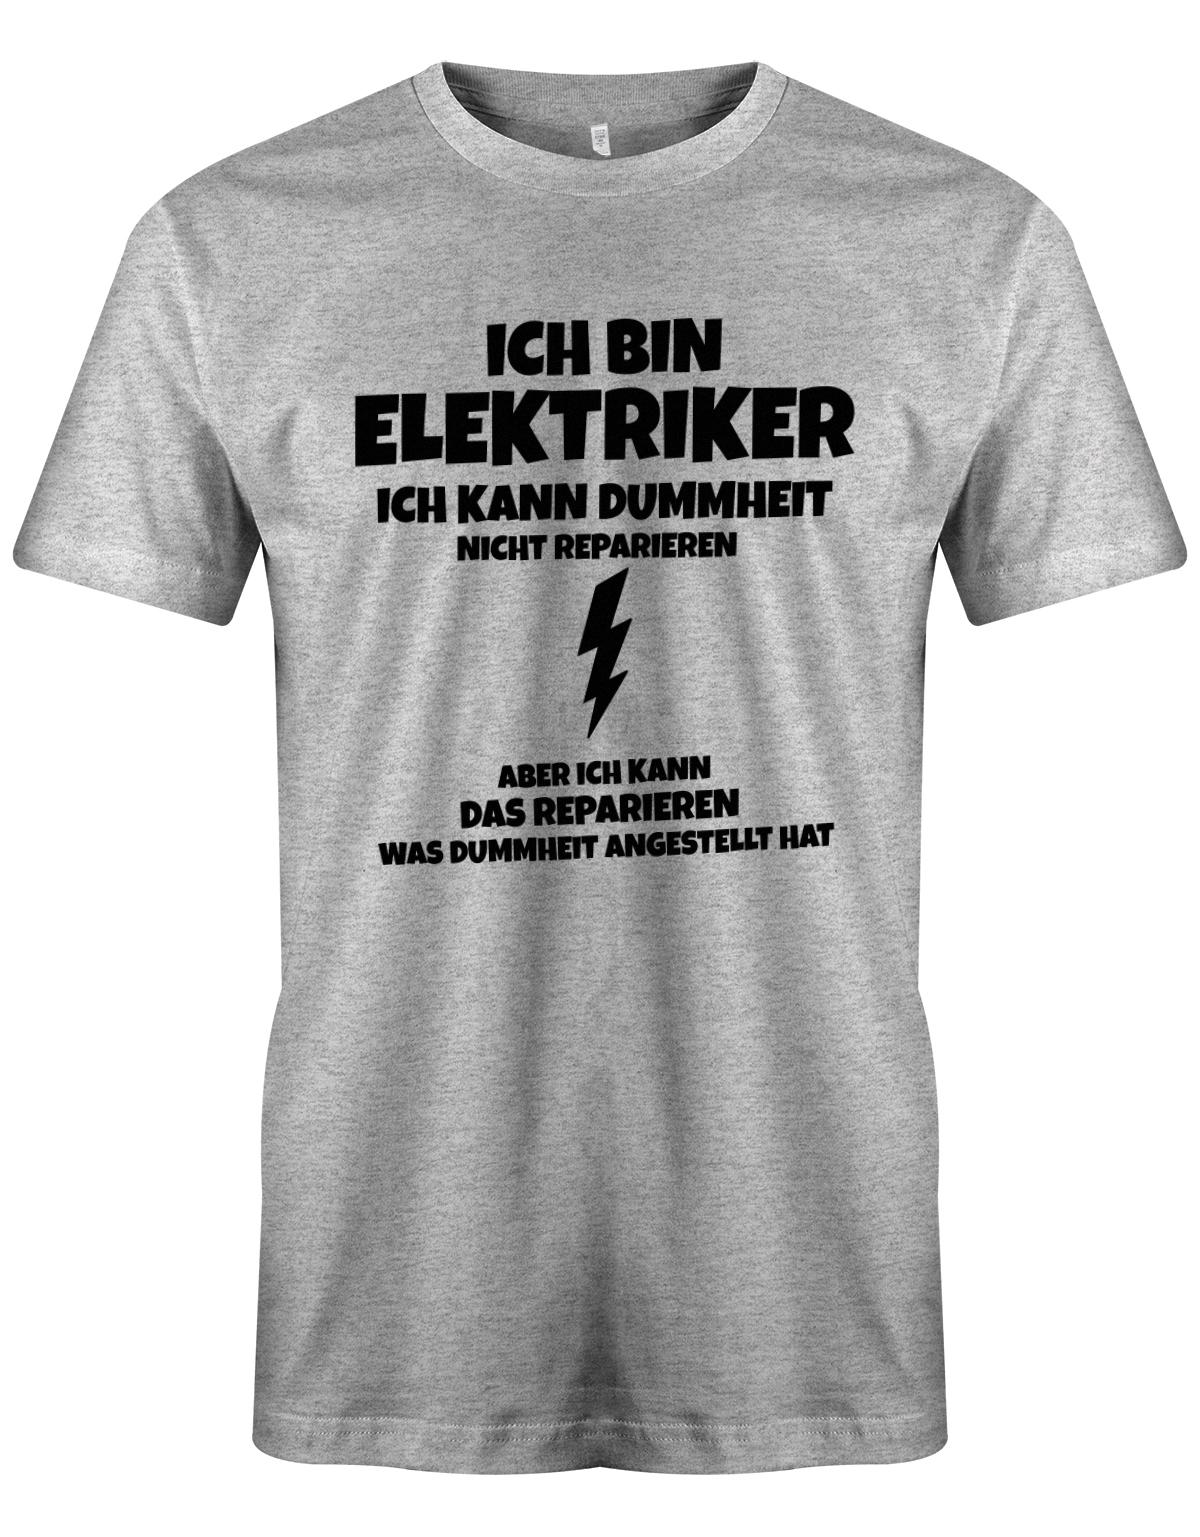 Elektriker Shirt - Ich bin Elektriker, ich kann Dummheit nicht reparieren. Aber ich kann das reparieren, was Dummheit angestellt hat. Grau